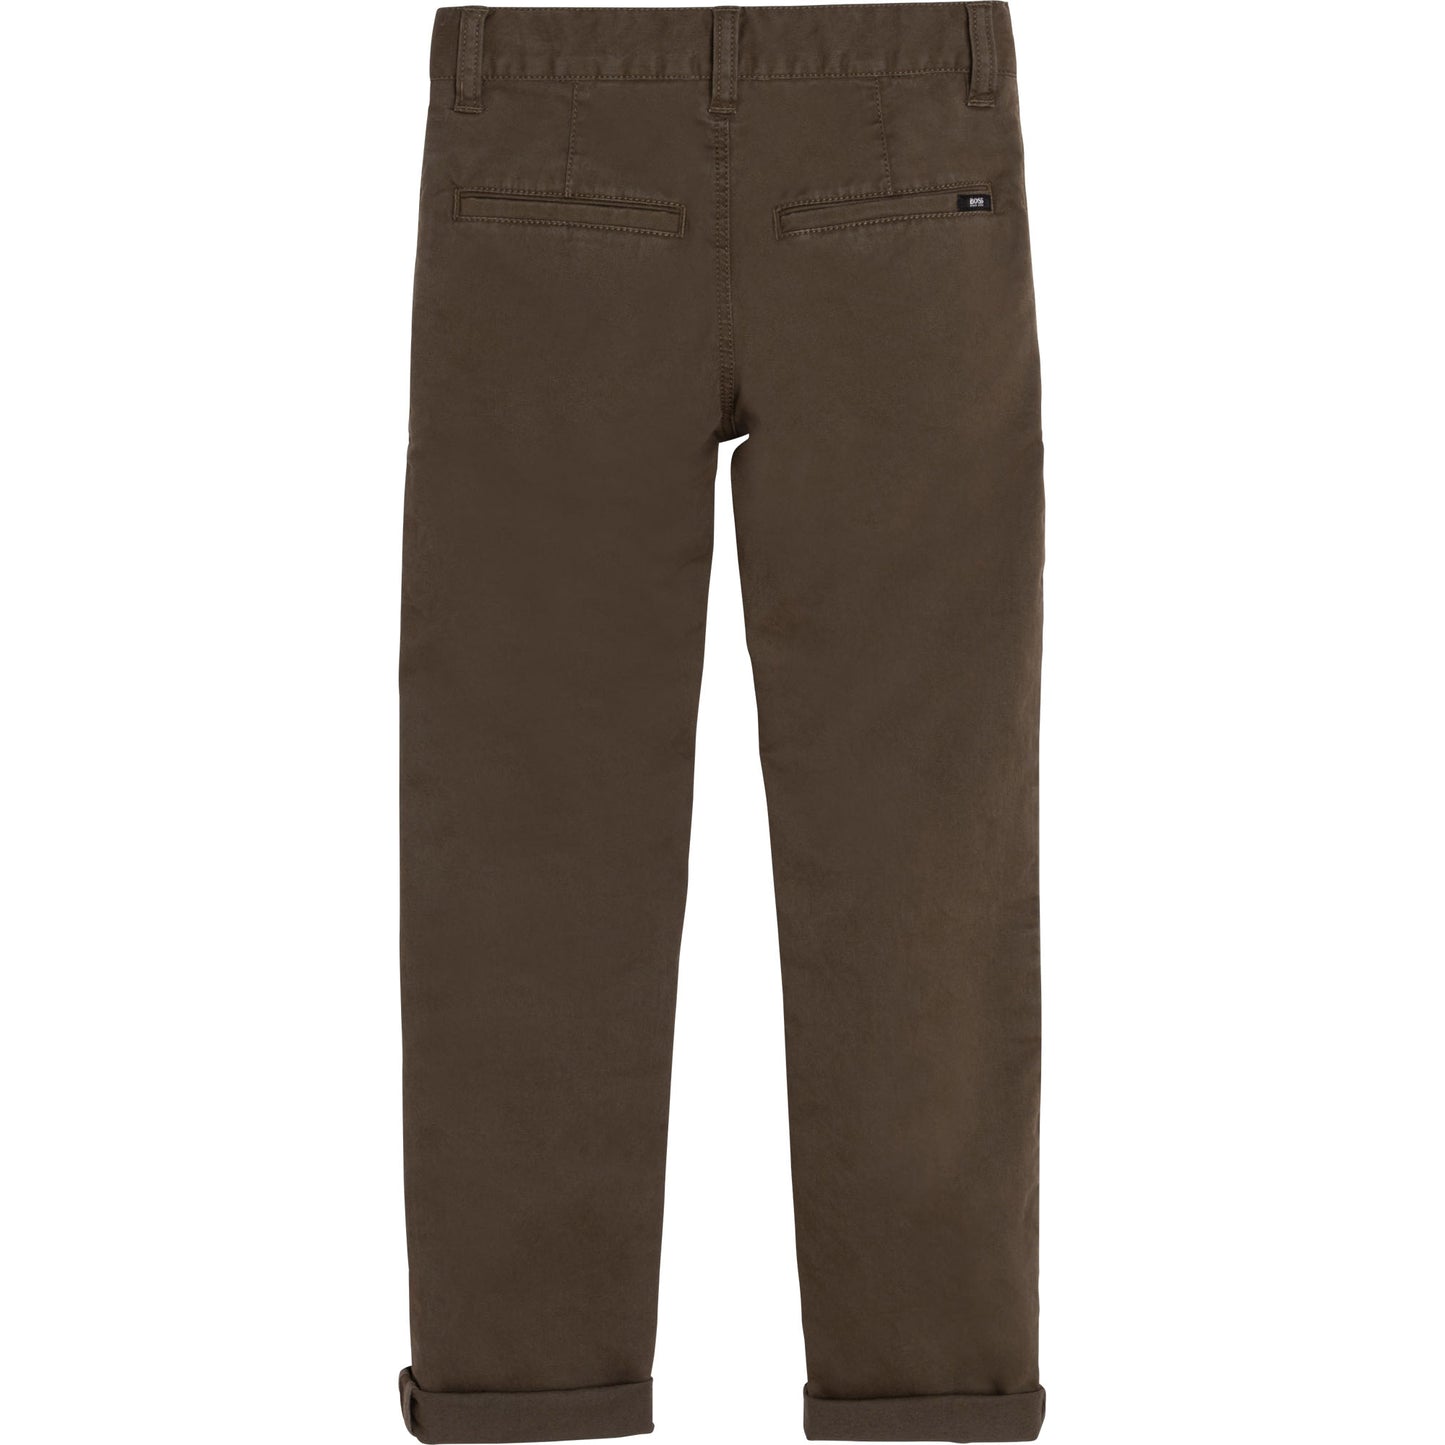 Hugo Boss Boys Khaki Cotton Pants J24732